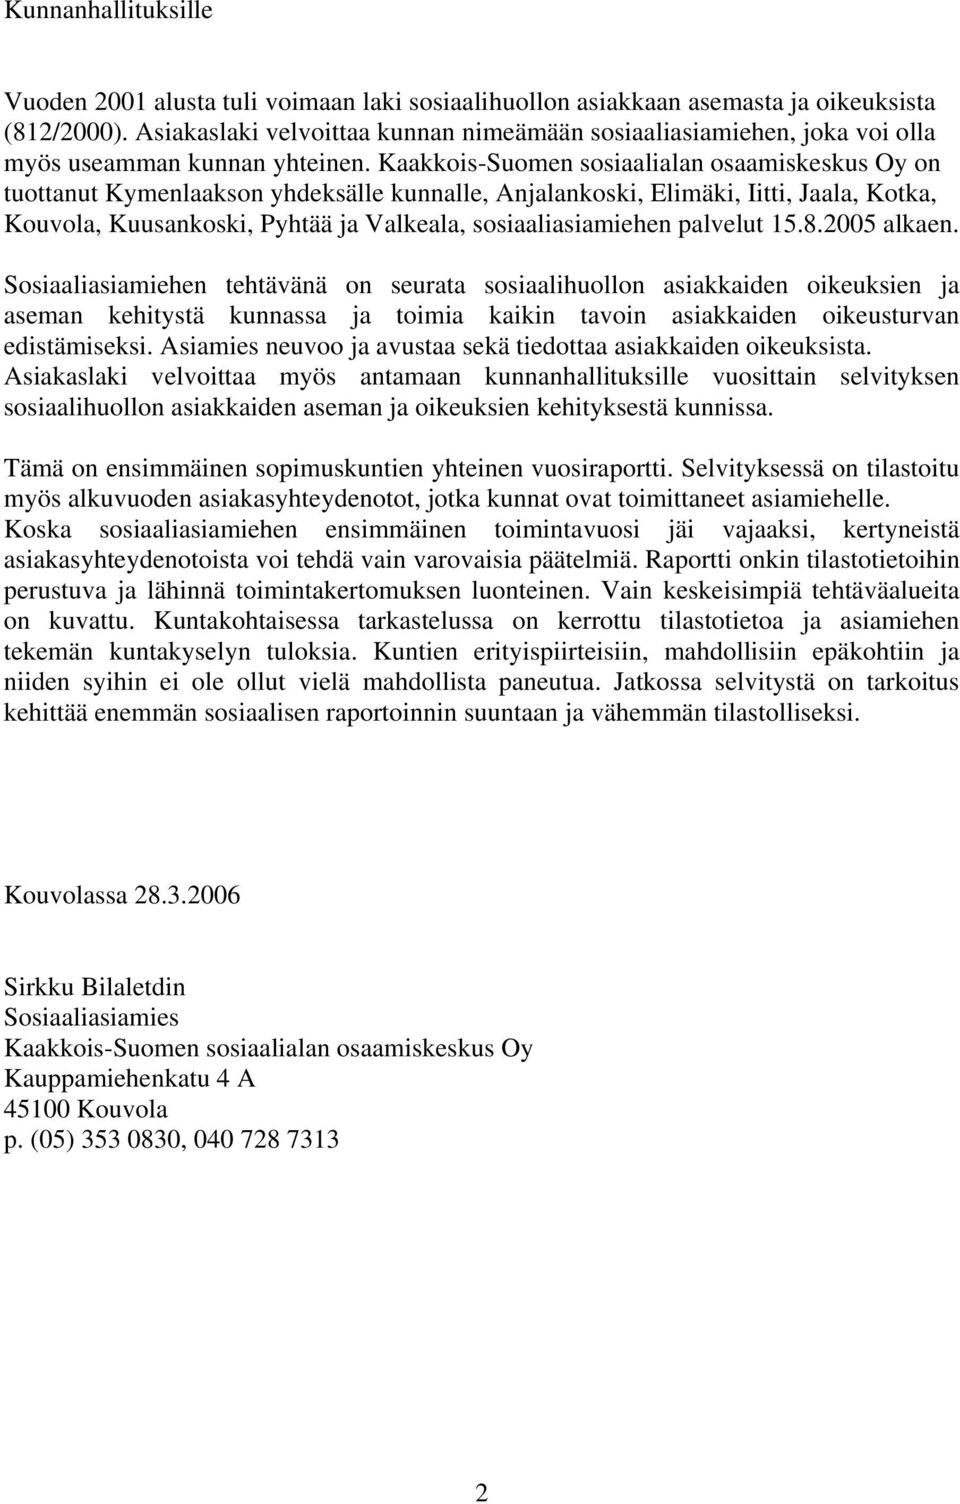 Kaakkois-Suomen sosiaalialan osaamiskeskus Oy on tuottanut Kymenlaakson yhdeksälle kunnalle, Anjalankoski, Elimäki, Iitti, Jaala, Kotka, Kouvola, Kuusankoski, Pyhtää ja Valkeala, sosiaaliasiamiehen